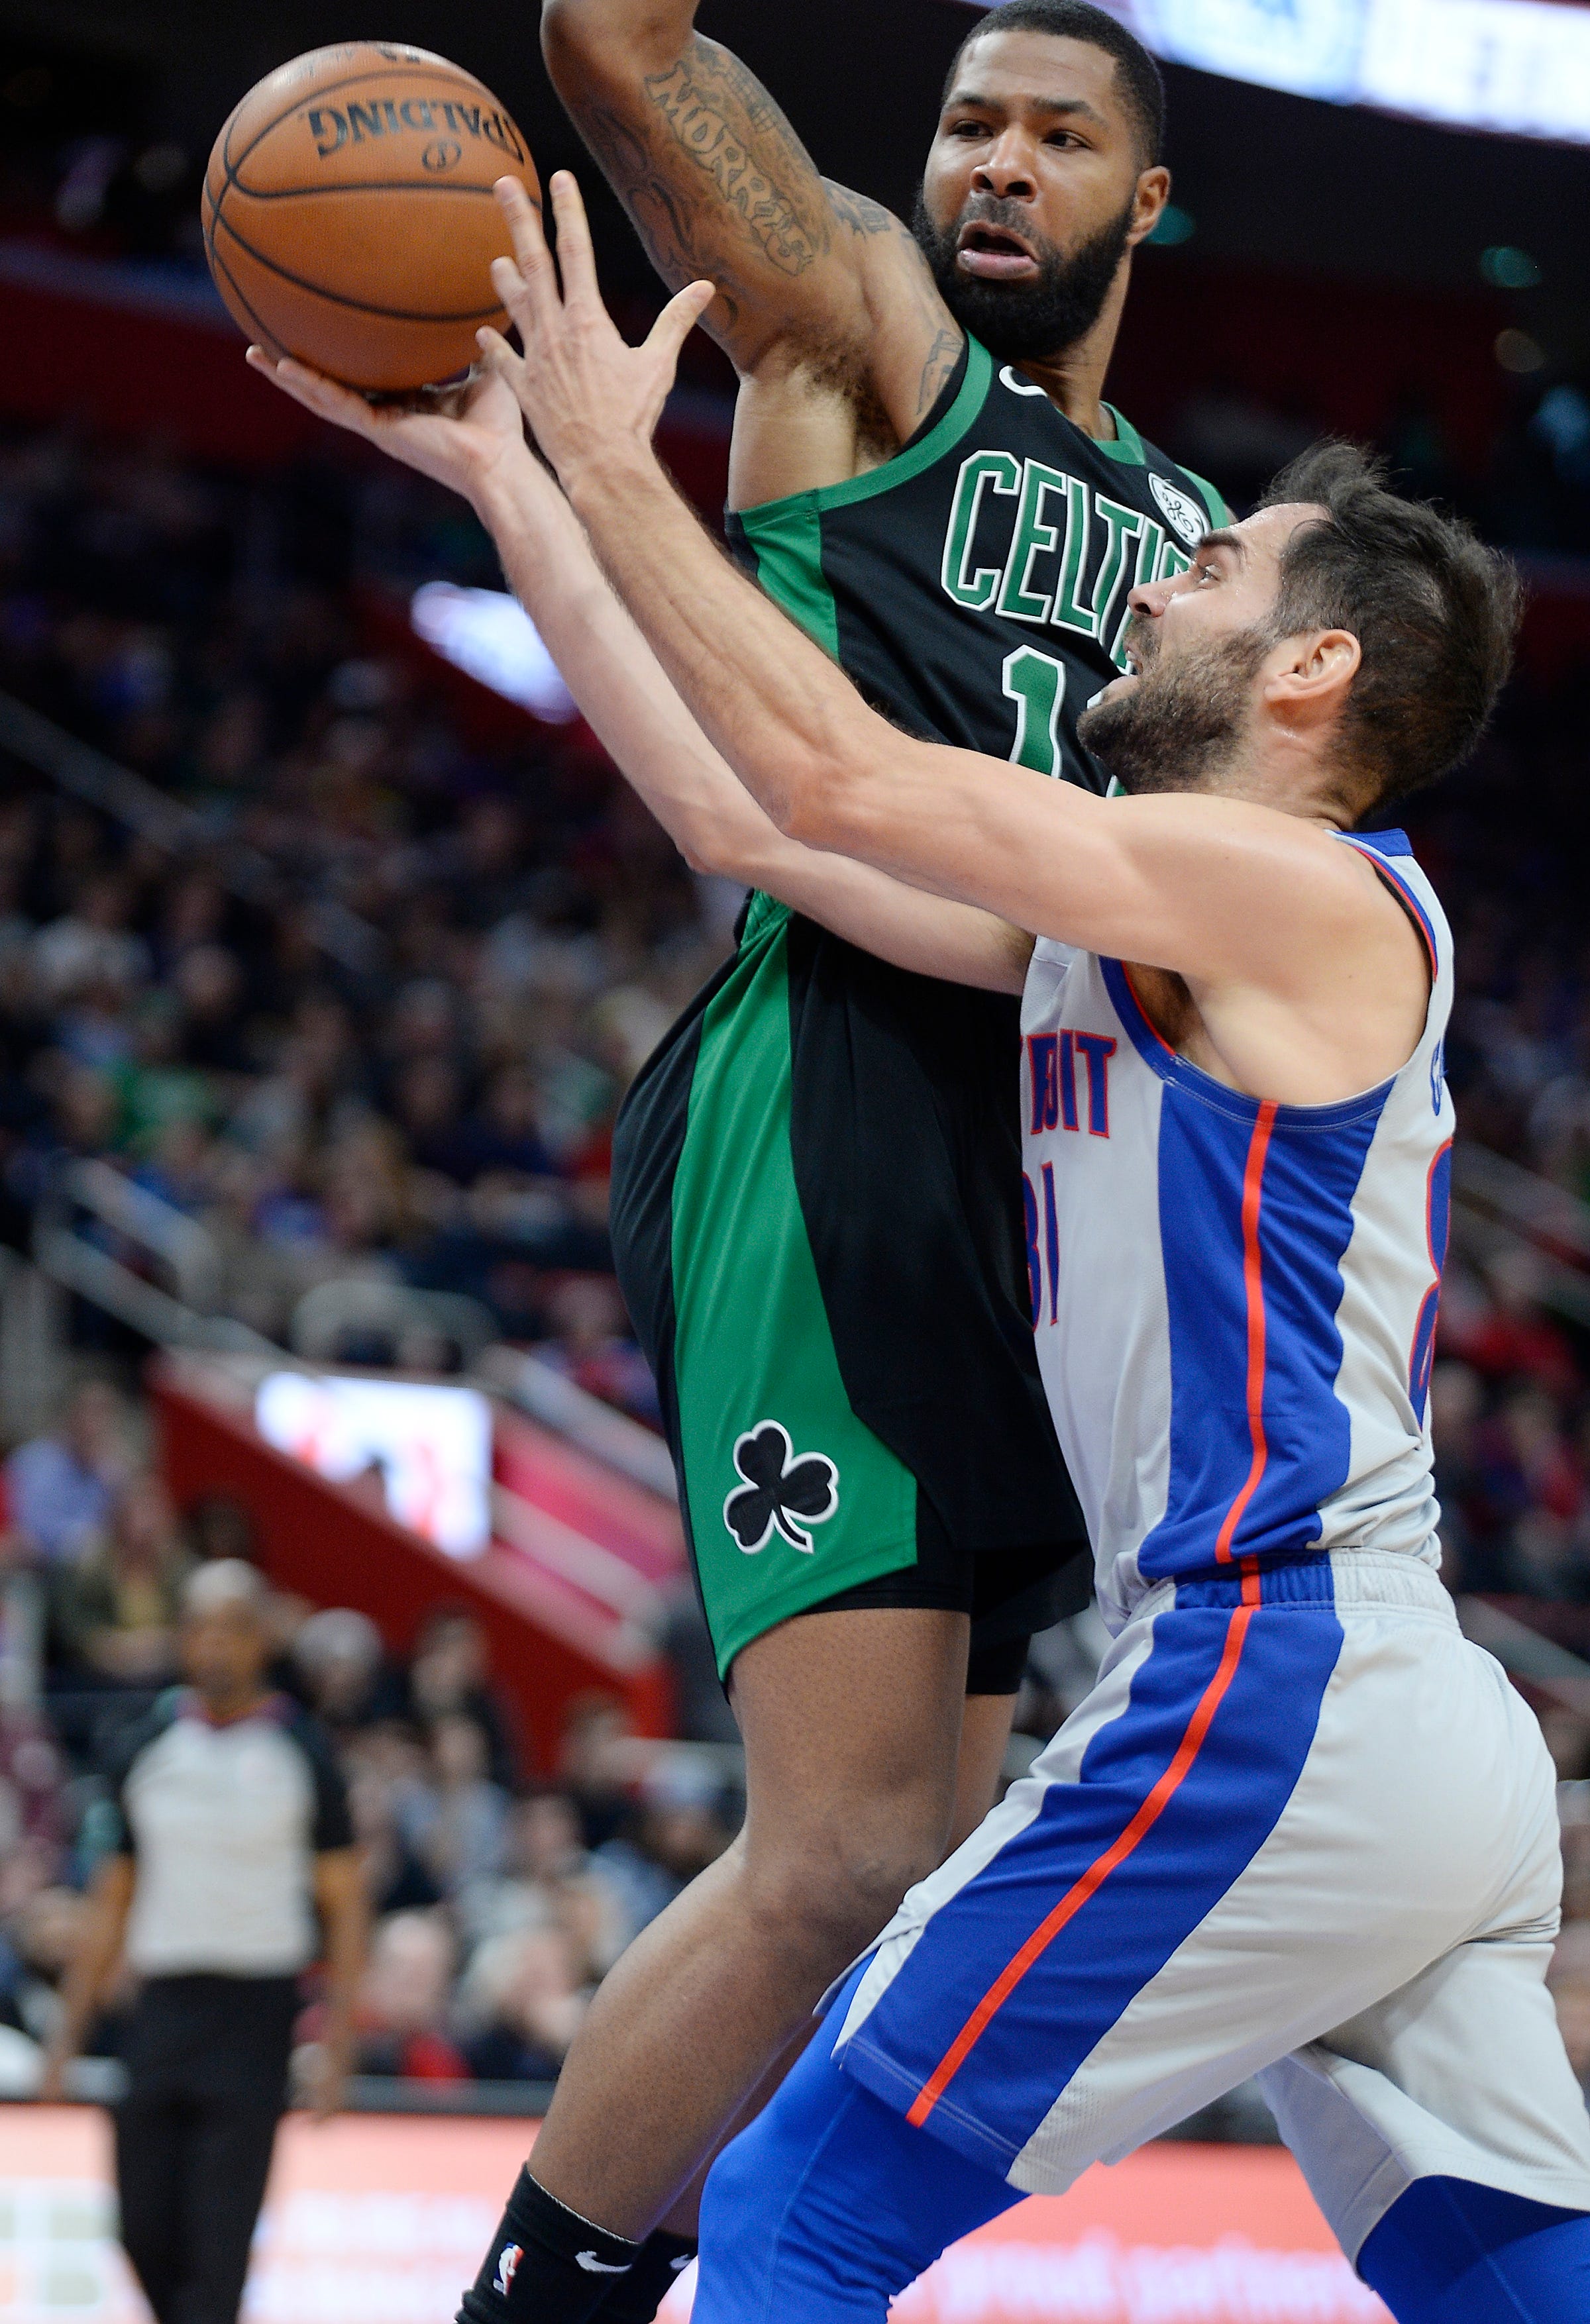 Pistons' Jose Calderon shoots over Celtics' Marcus Morris in the third quarter.